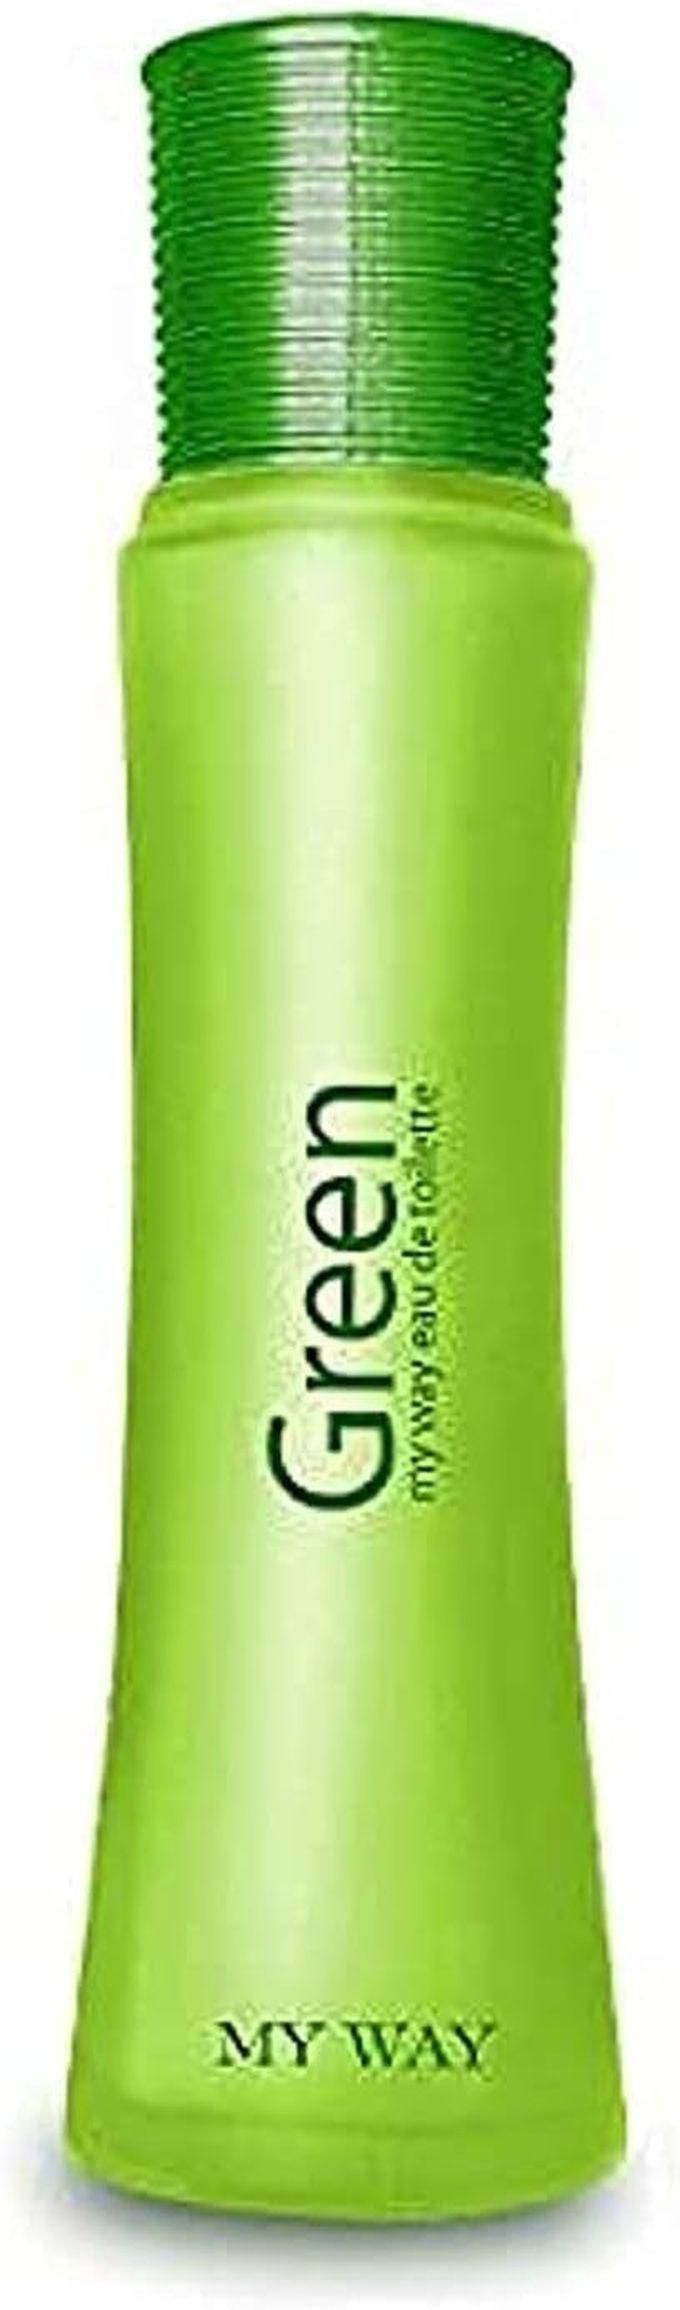 My Way Green For Women 50ml - Eau De Parfum